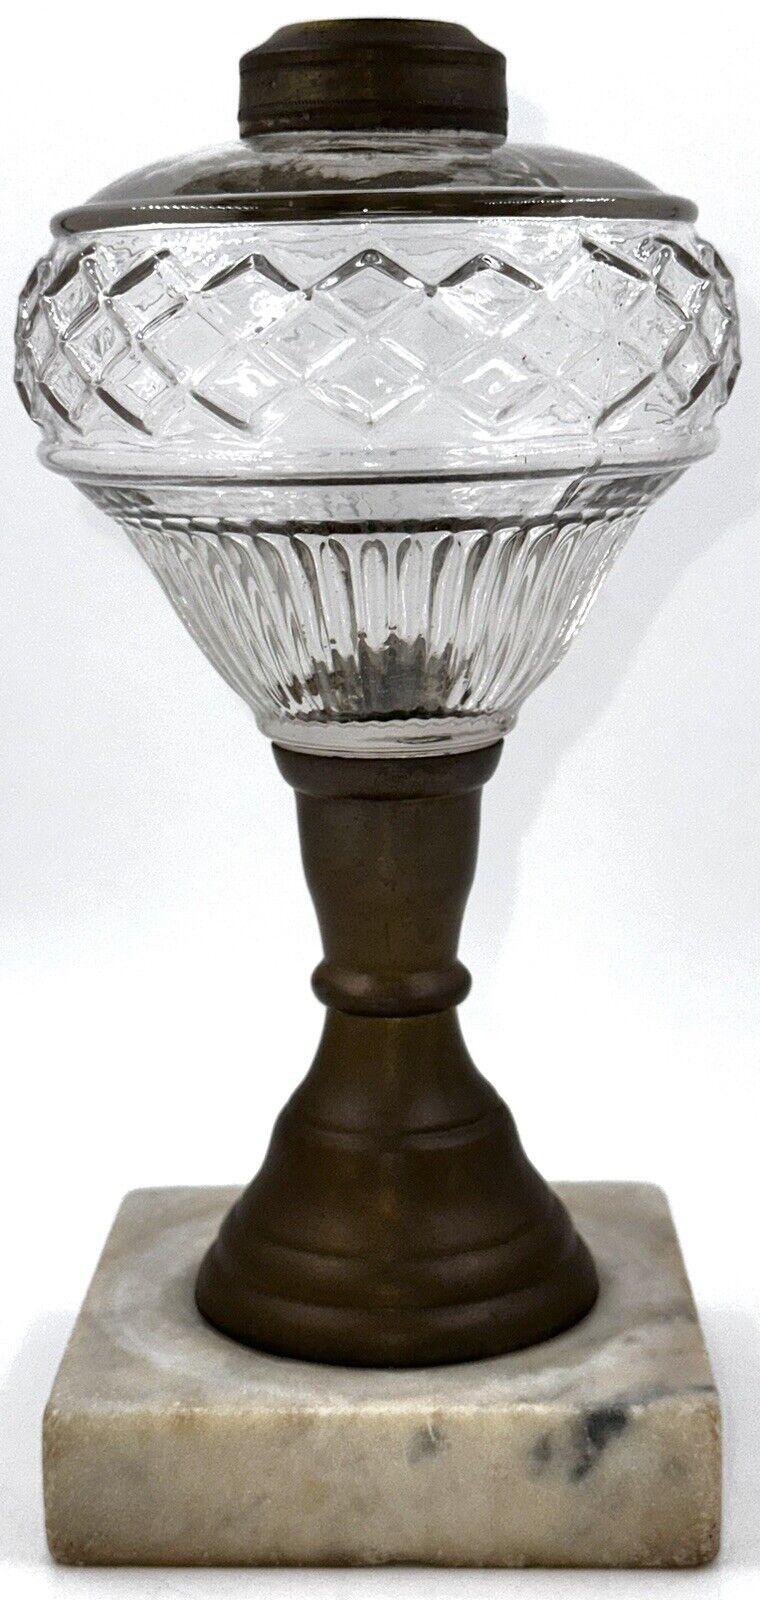 Antique Composite Kerosene Oil Lamp LATTICE BAND and RIB Described Thuro 2, 41-k